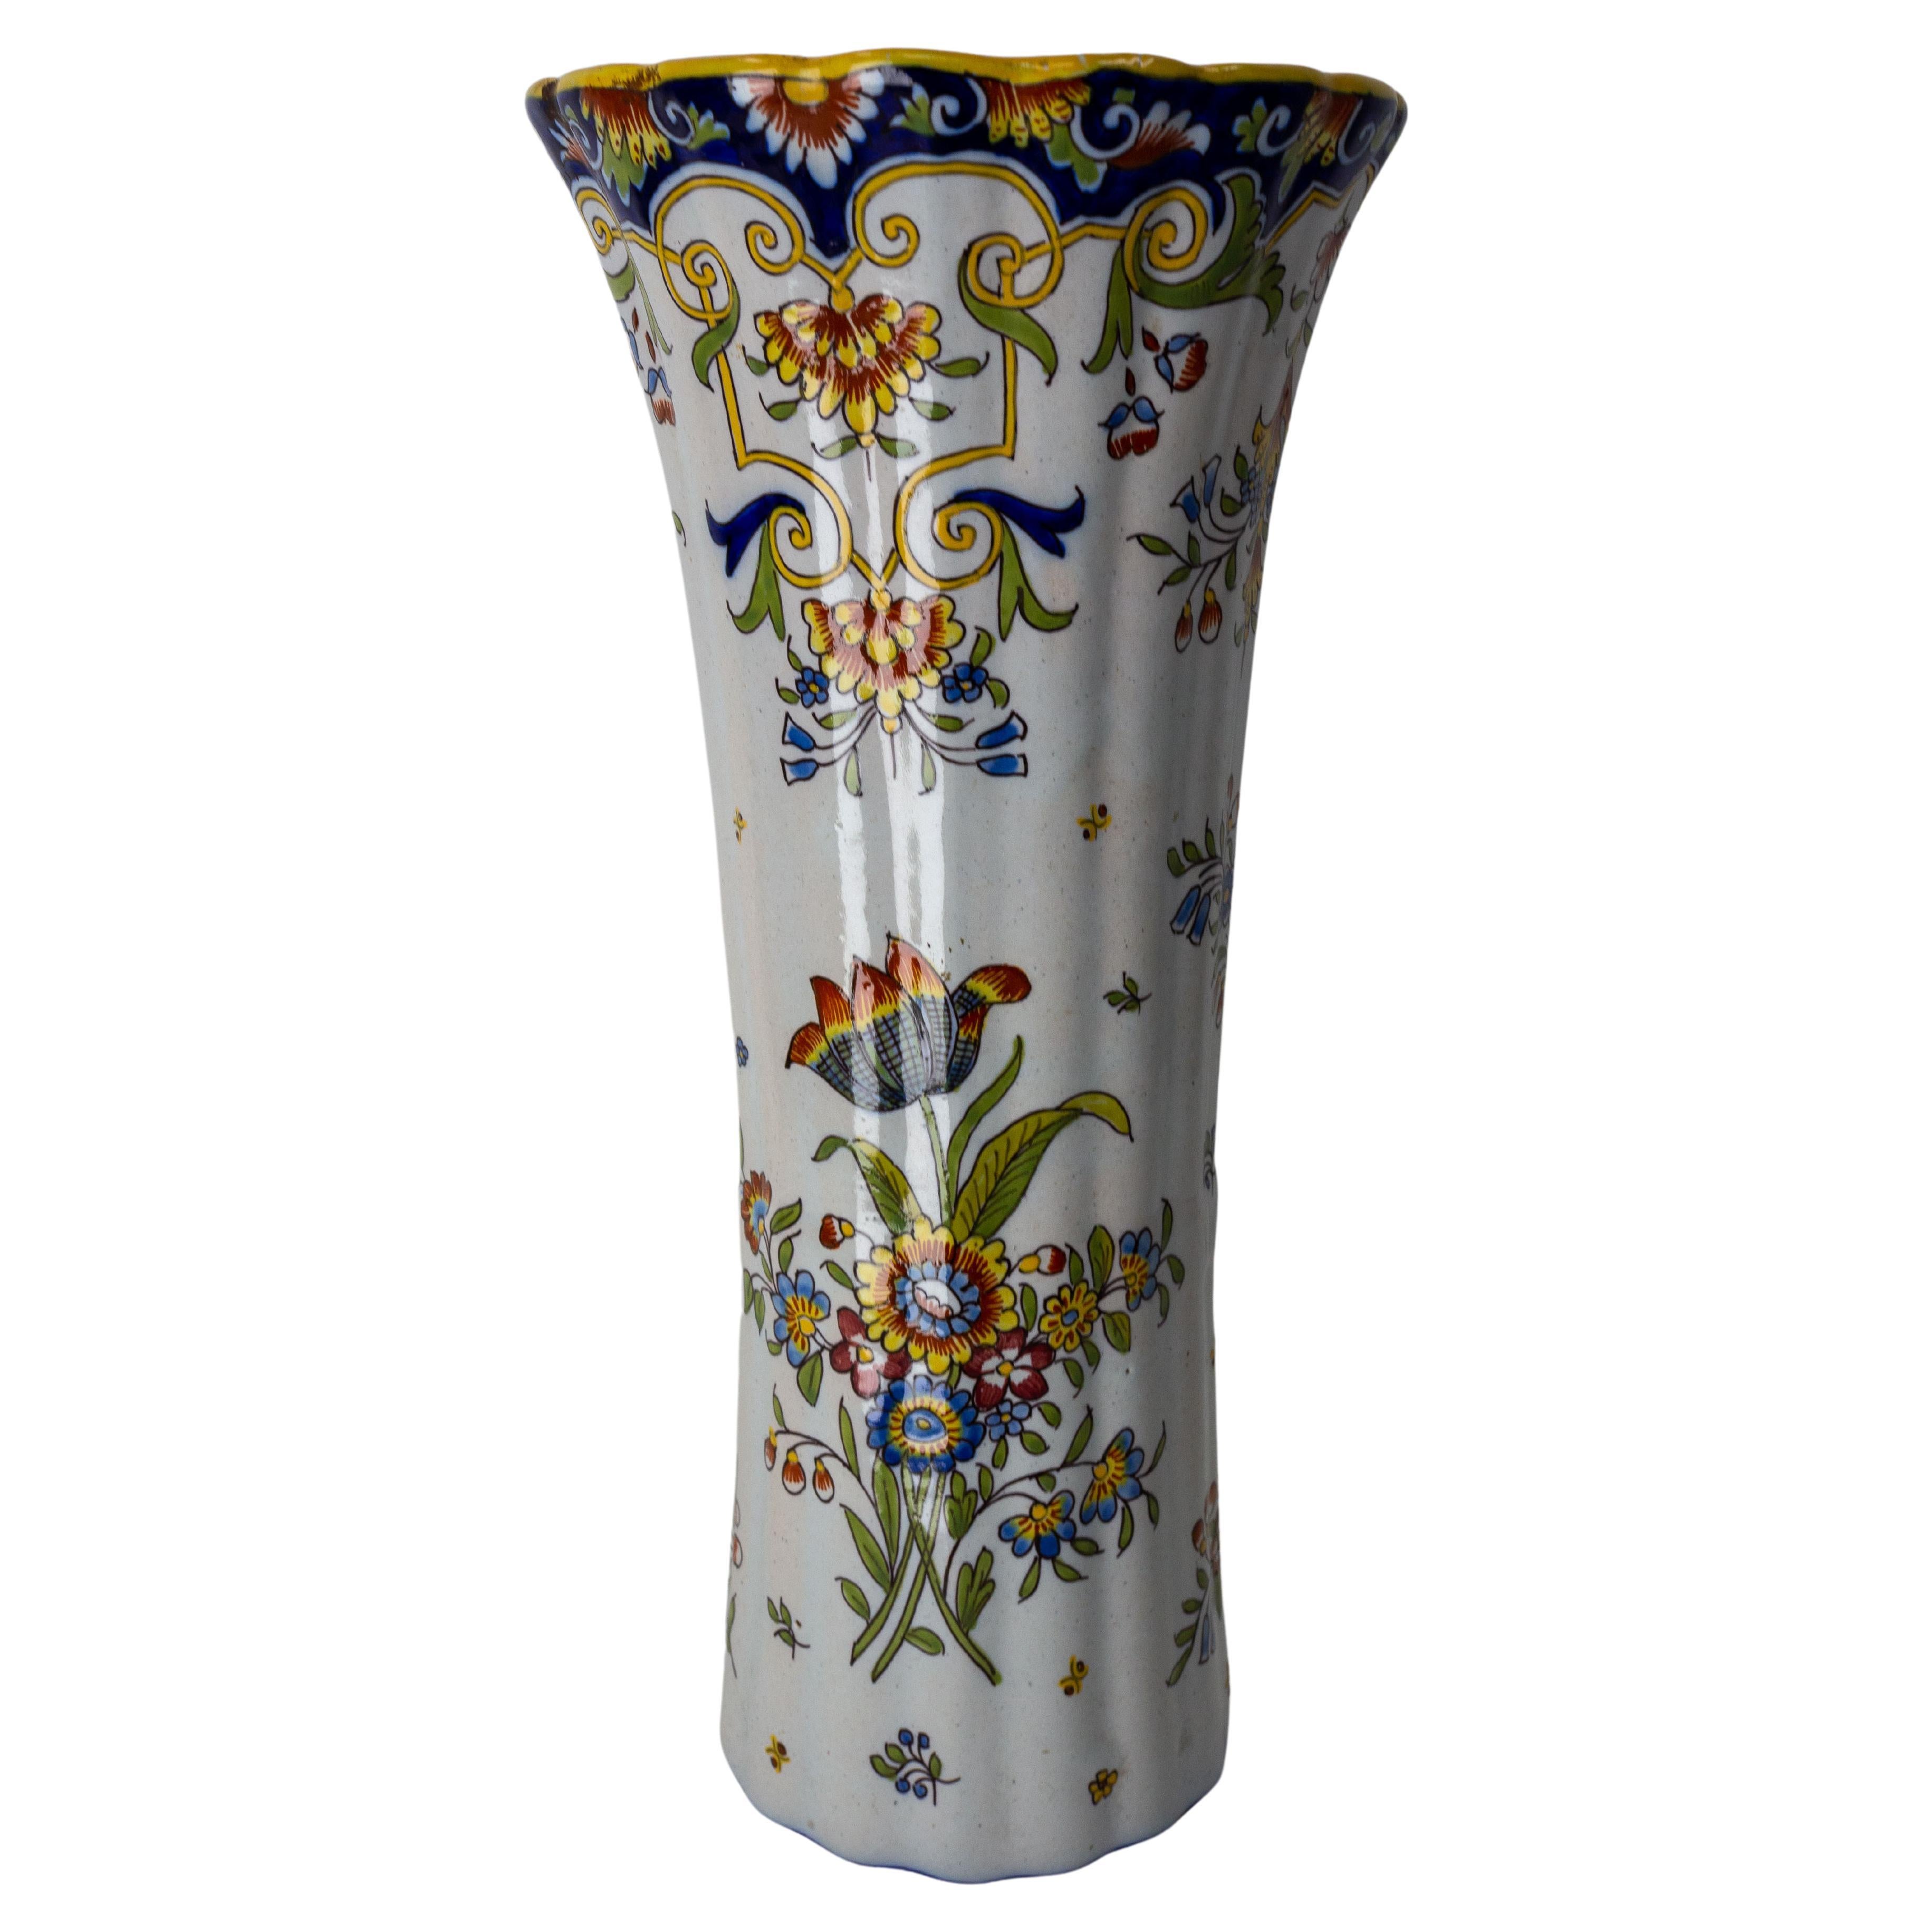 French Vieux Rouen Faience Vase with Vegetal Patterns Art Nouveau, c. 1900 For Sale